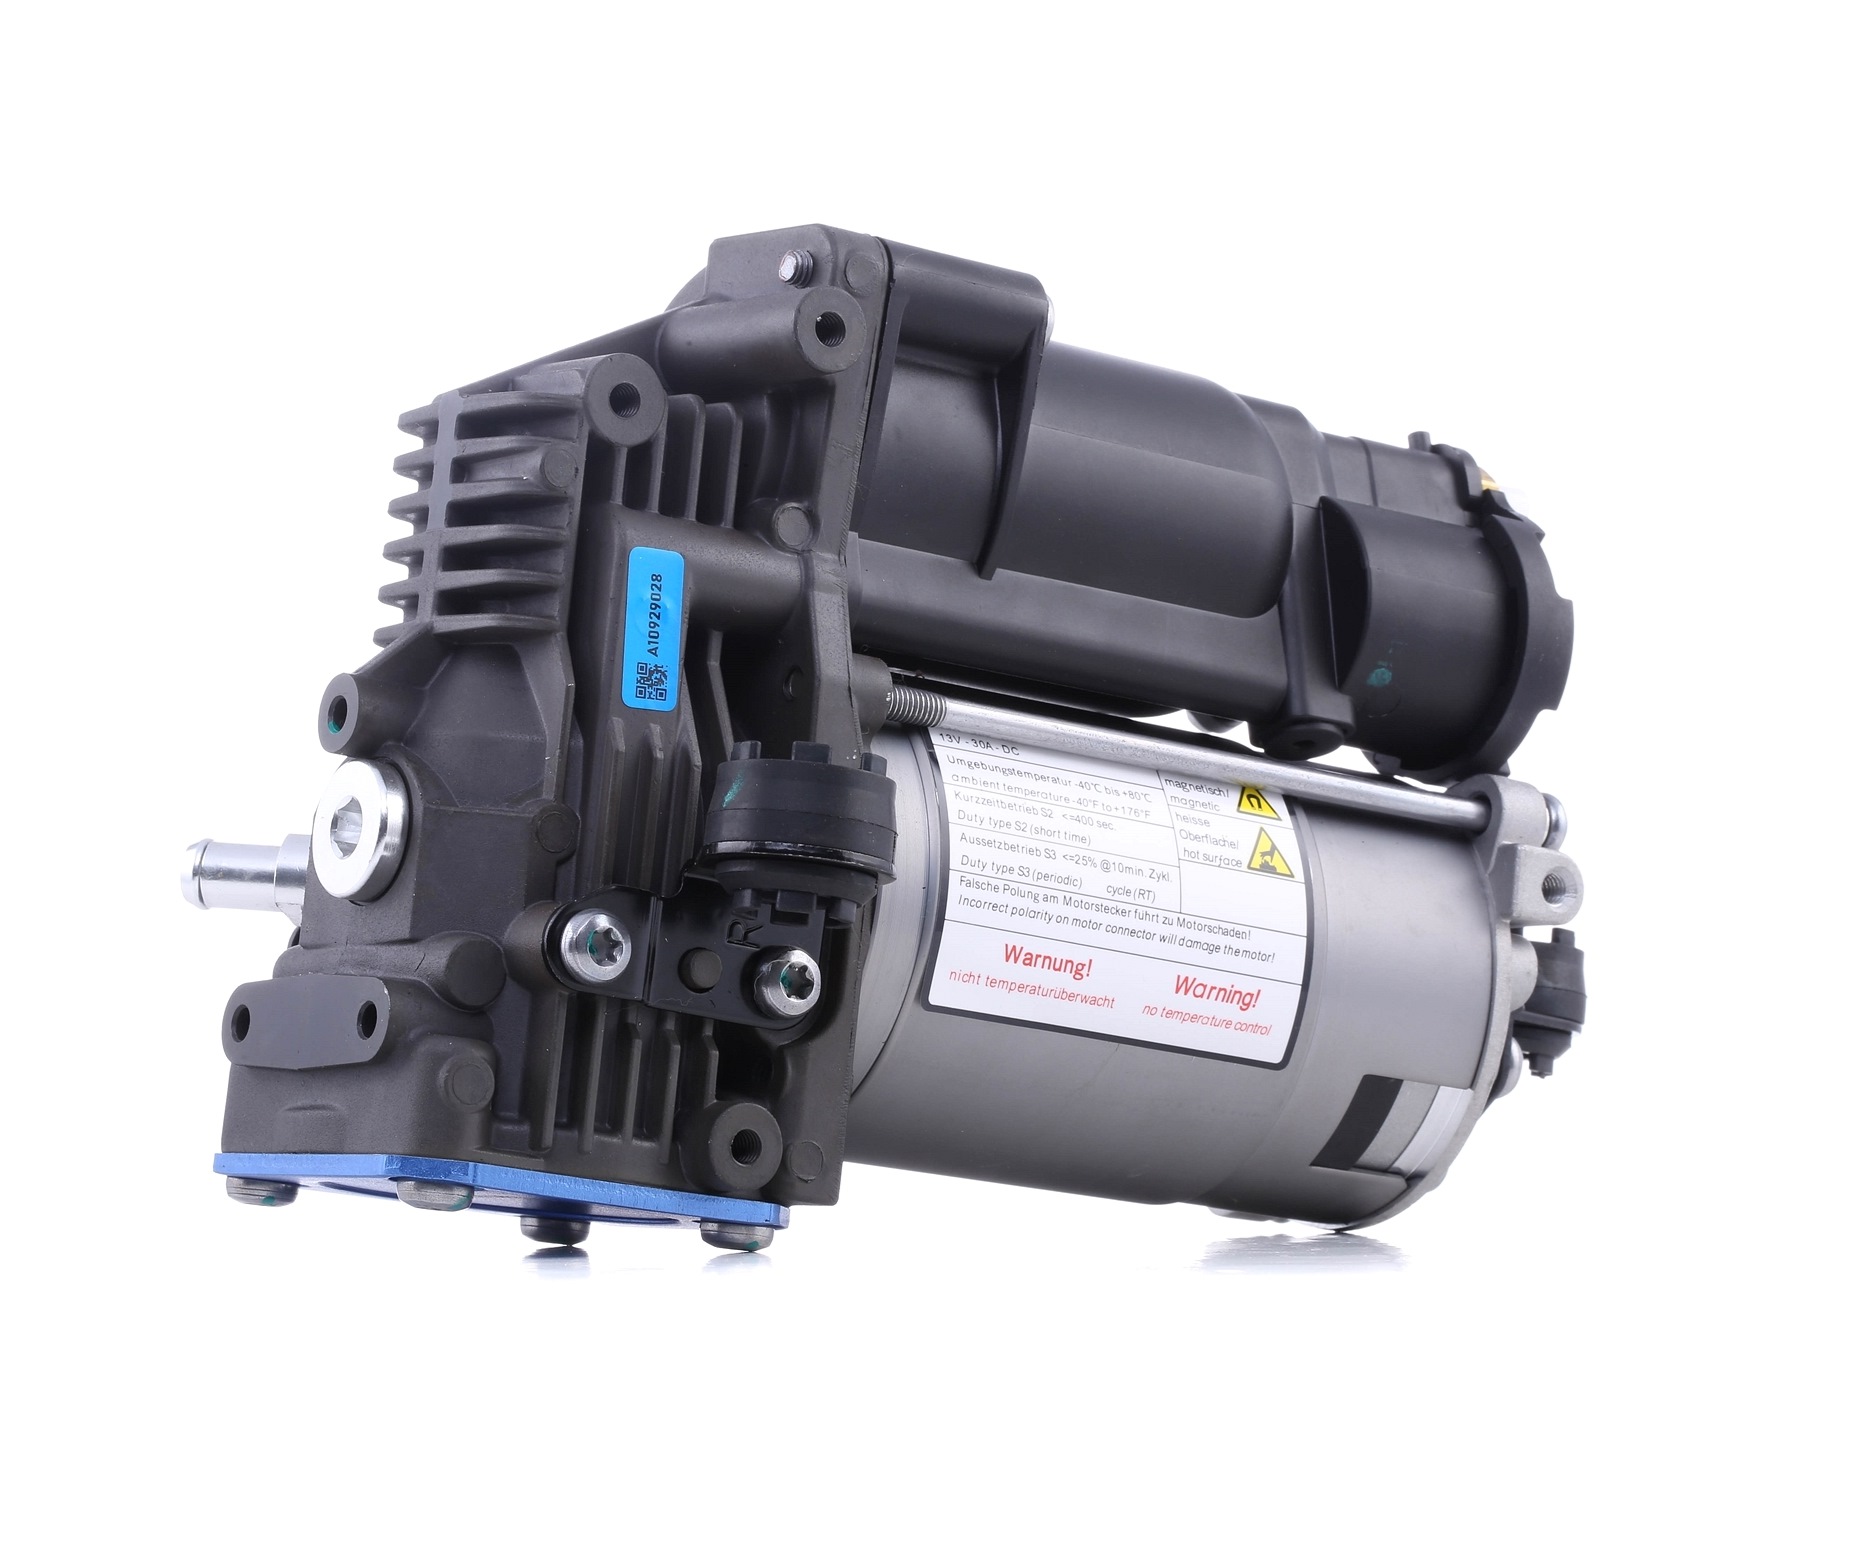 10-255650 BILSTEIN - B1 OE Replacement (Air) Kompressor, Luftfederung ▷  AUTODOC Preis und Erfahrung